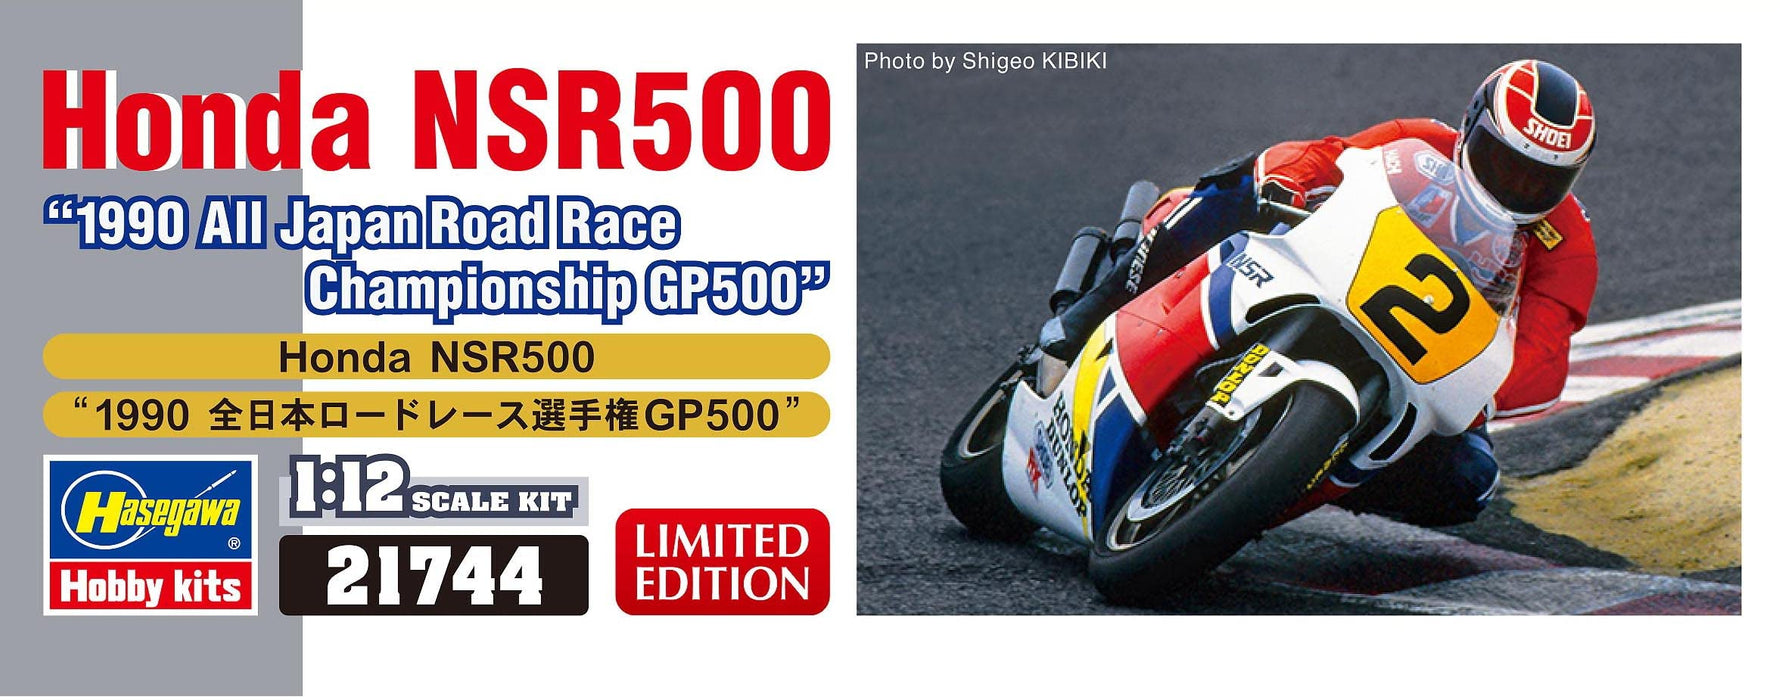 HASEGAWA 1/12 Honda Nsr500 1990 All Japan Road Race Championship Plastique Modèle